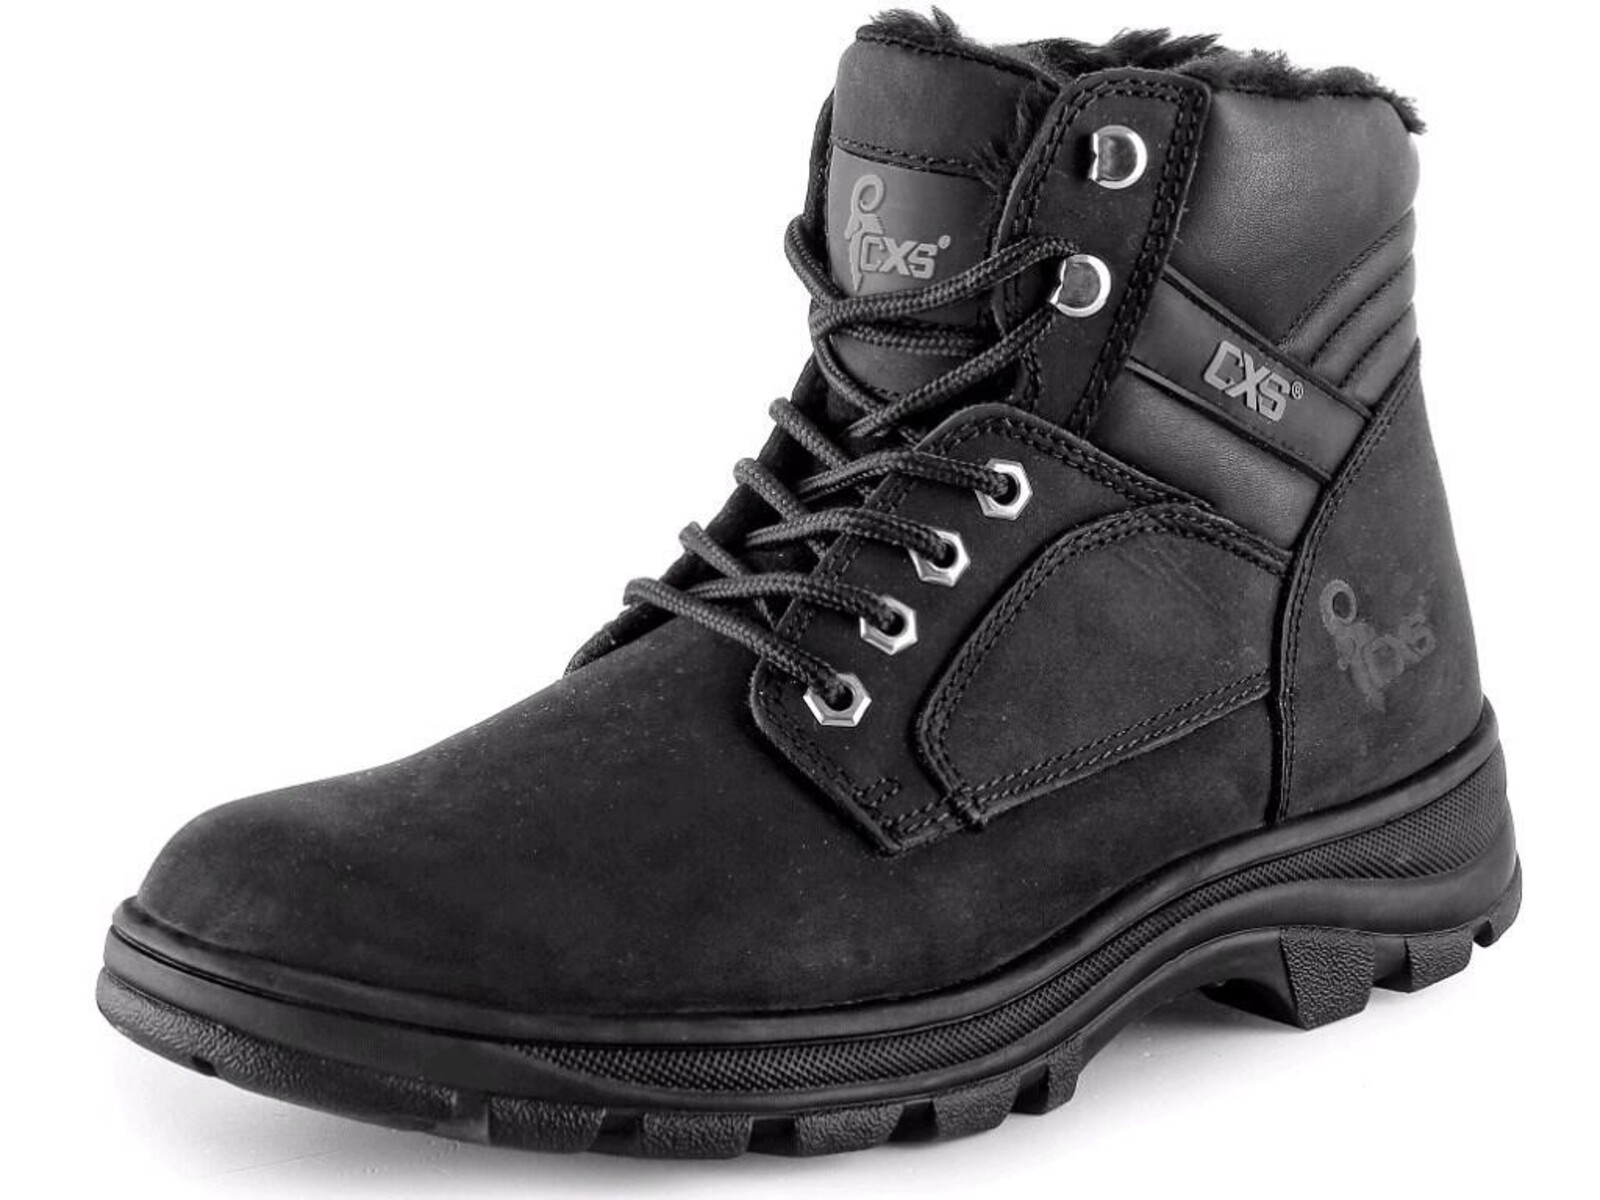 Zimná členková obuv CXS Road Industry FO E CI SRA - veľkosť: 48, farba: čierna